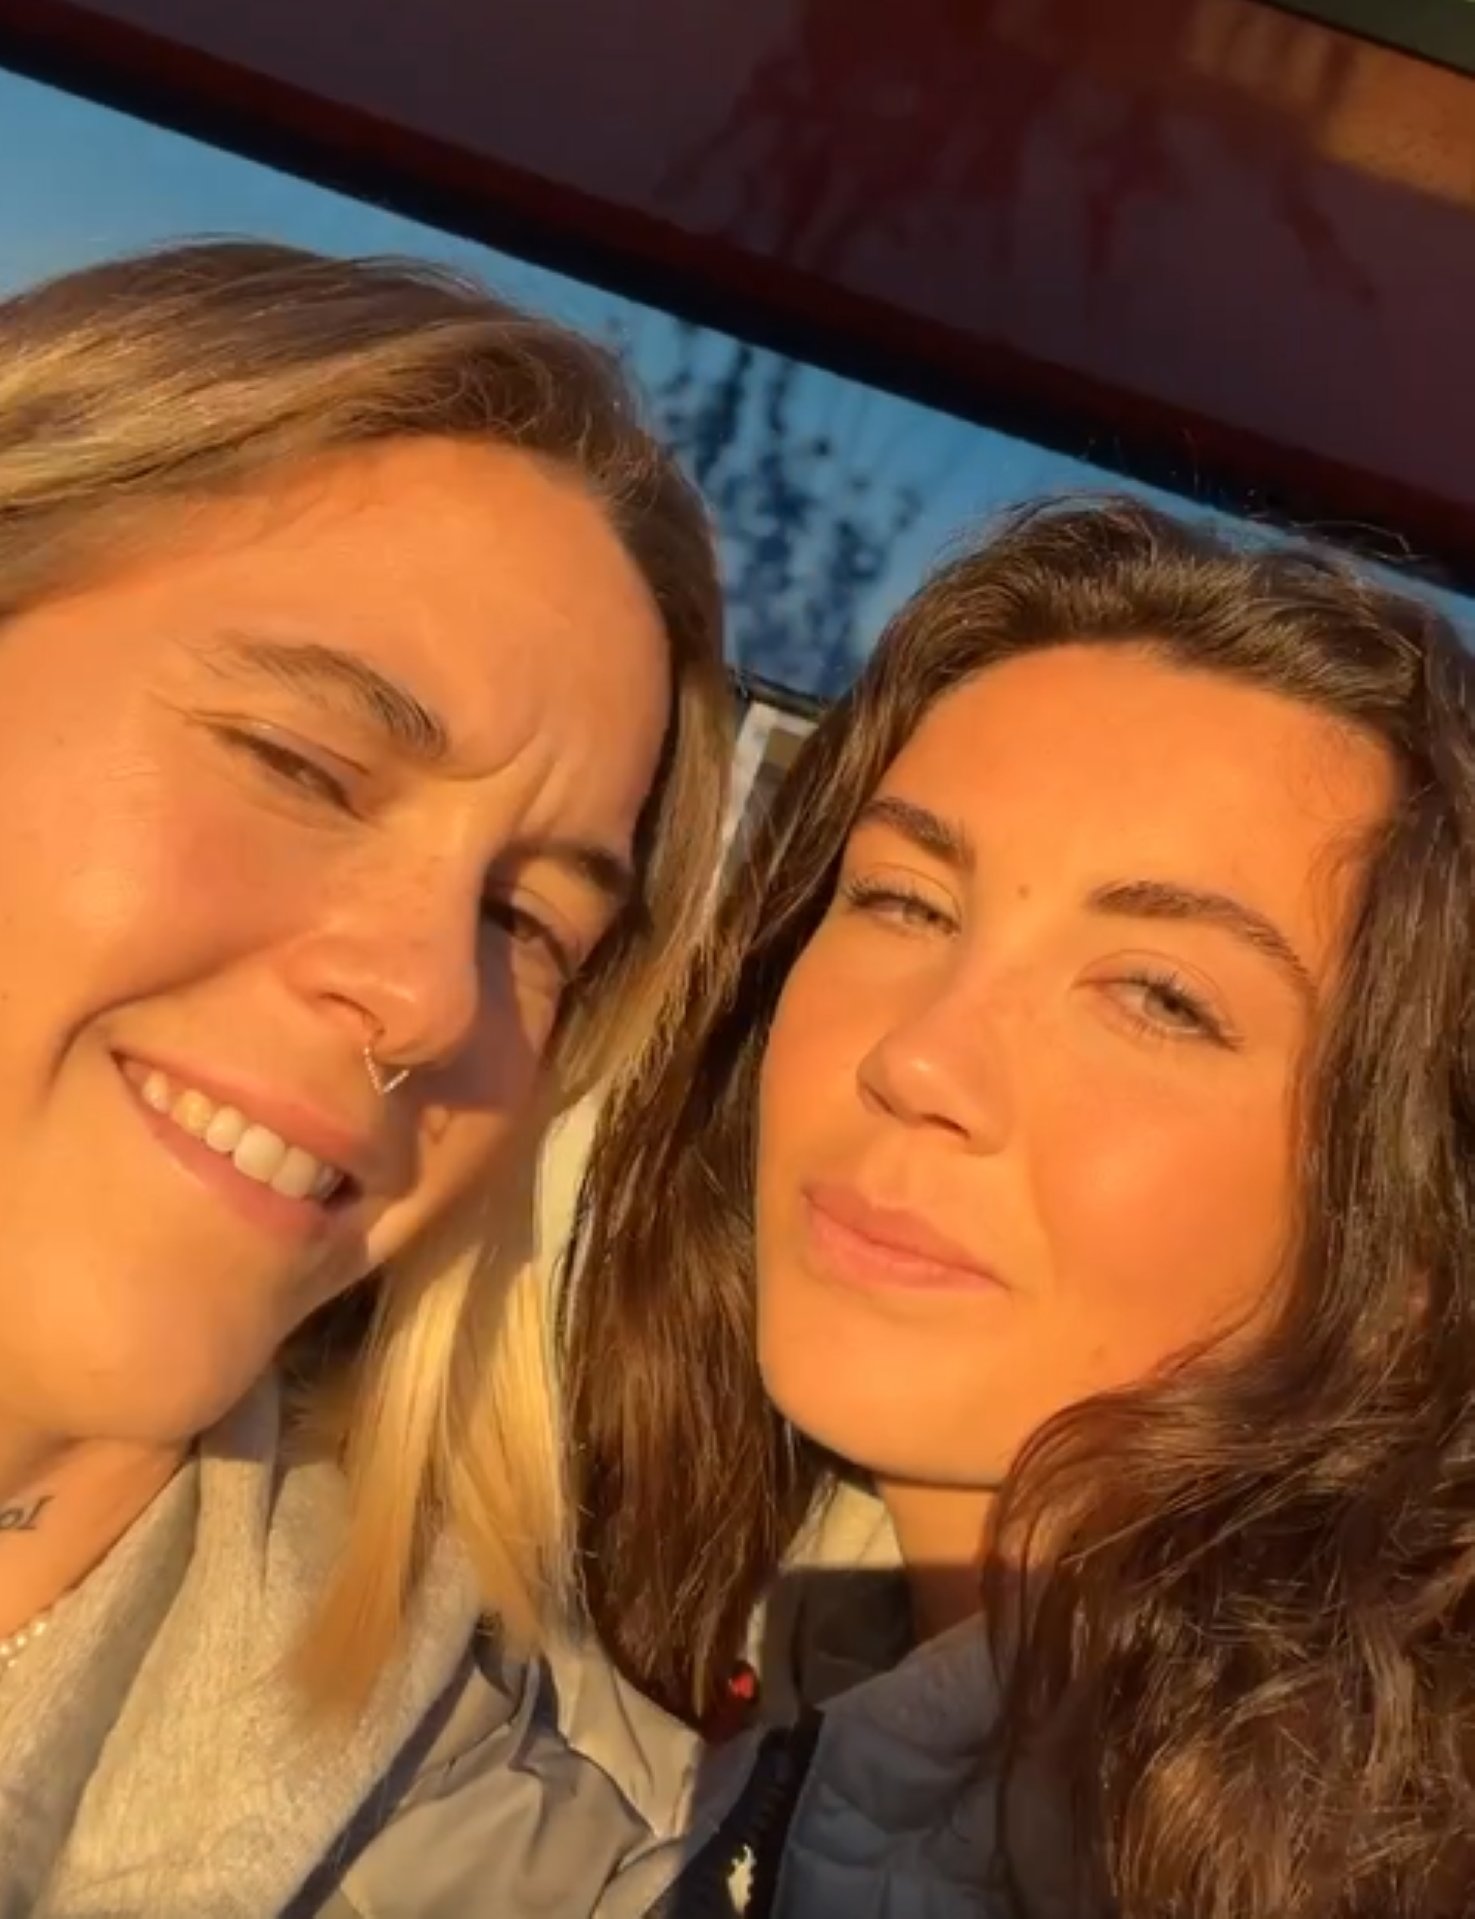 Mapi León i Ingrid Engen viatgen enamorades: vídeo misteriós i detall en català